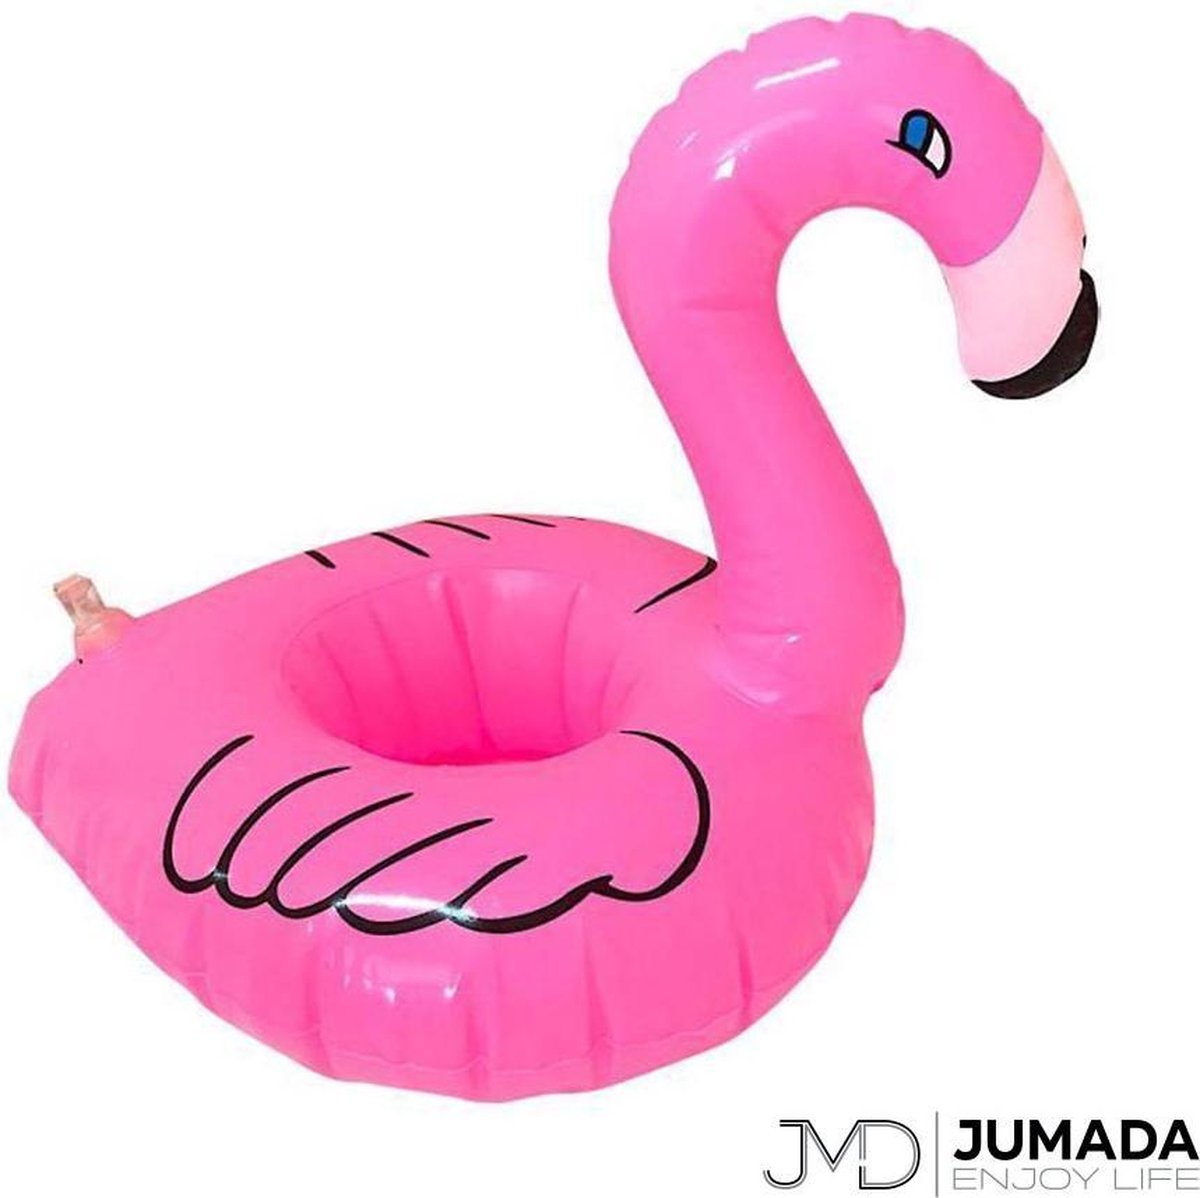 Jumada's Opblaasbare Bekerhouder Flamingo - Voor Bekers / Blikken / Flessen - Opblaas Drankhouder - Zwembadaccessoire - Opblaasfiguur - Flamingo's - Roze